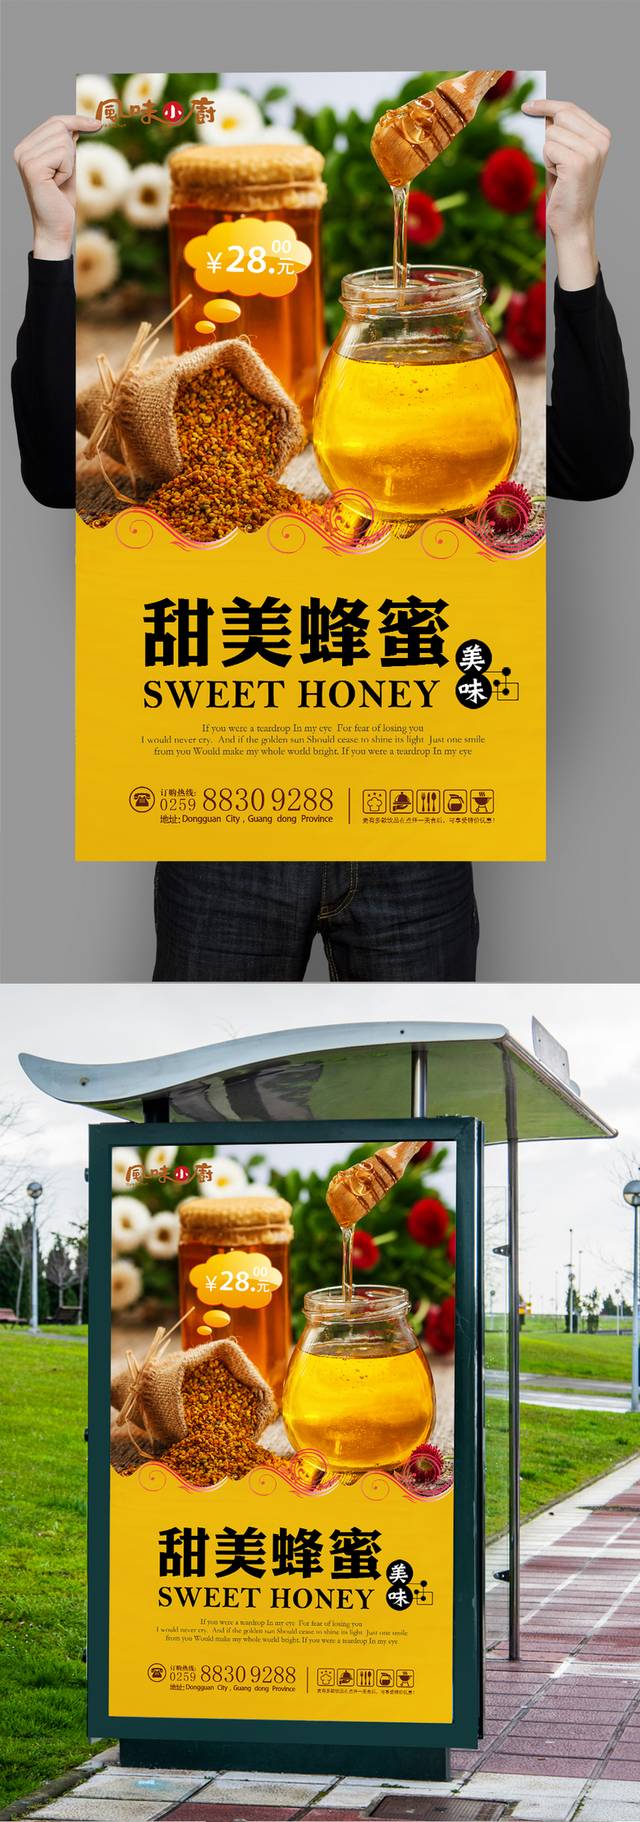 高清蜂蜜宣传海报设计